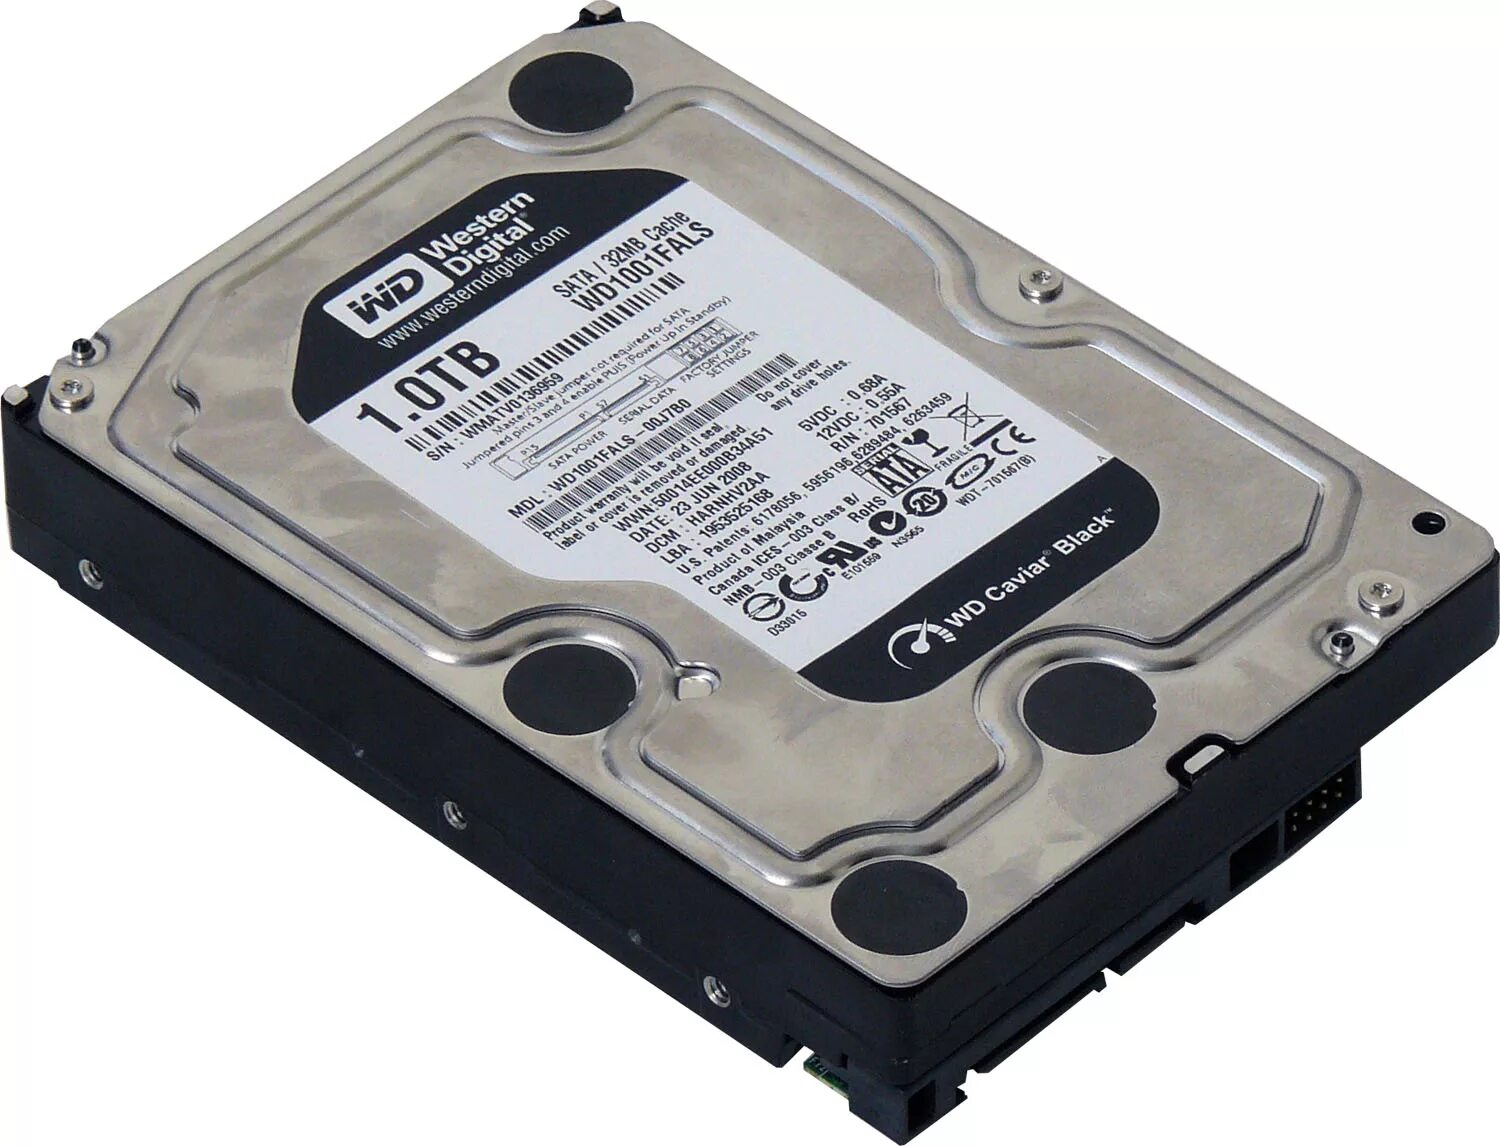 Внешняя память терабайт. Жёсткий диск Western Digital 1 ТБ. Жесткий диск 1 ТБ Western Digital sata3. Жёсткий диск на 1 терабайт SATA 3 WD Black. Western Digital 1 ТБ wd1002faex.